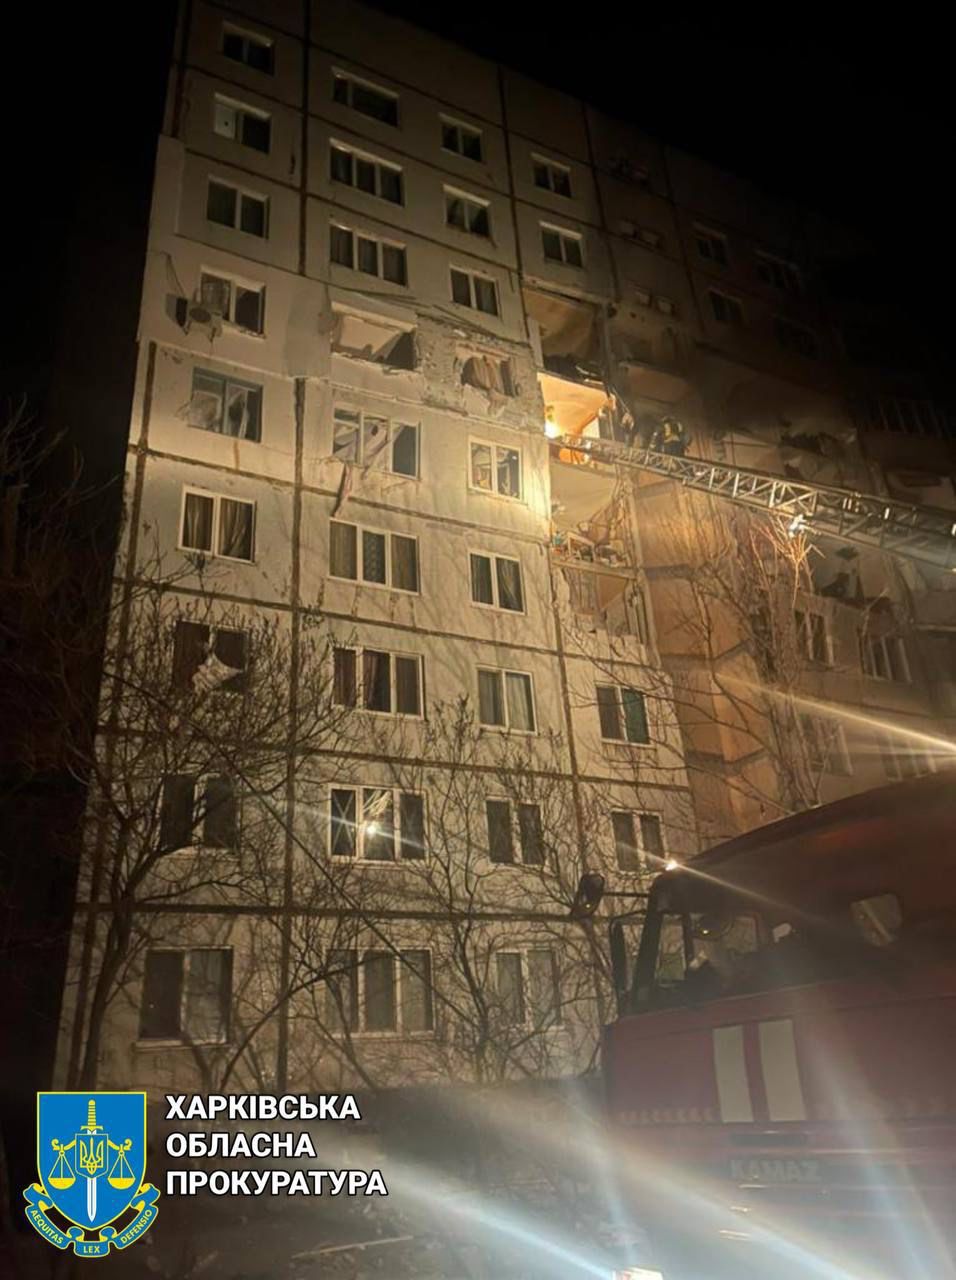 Обстріл багатоповерхового будинку у Харкові із загиблим та потерпілими - розпочато кримінальне провадження